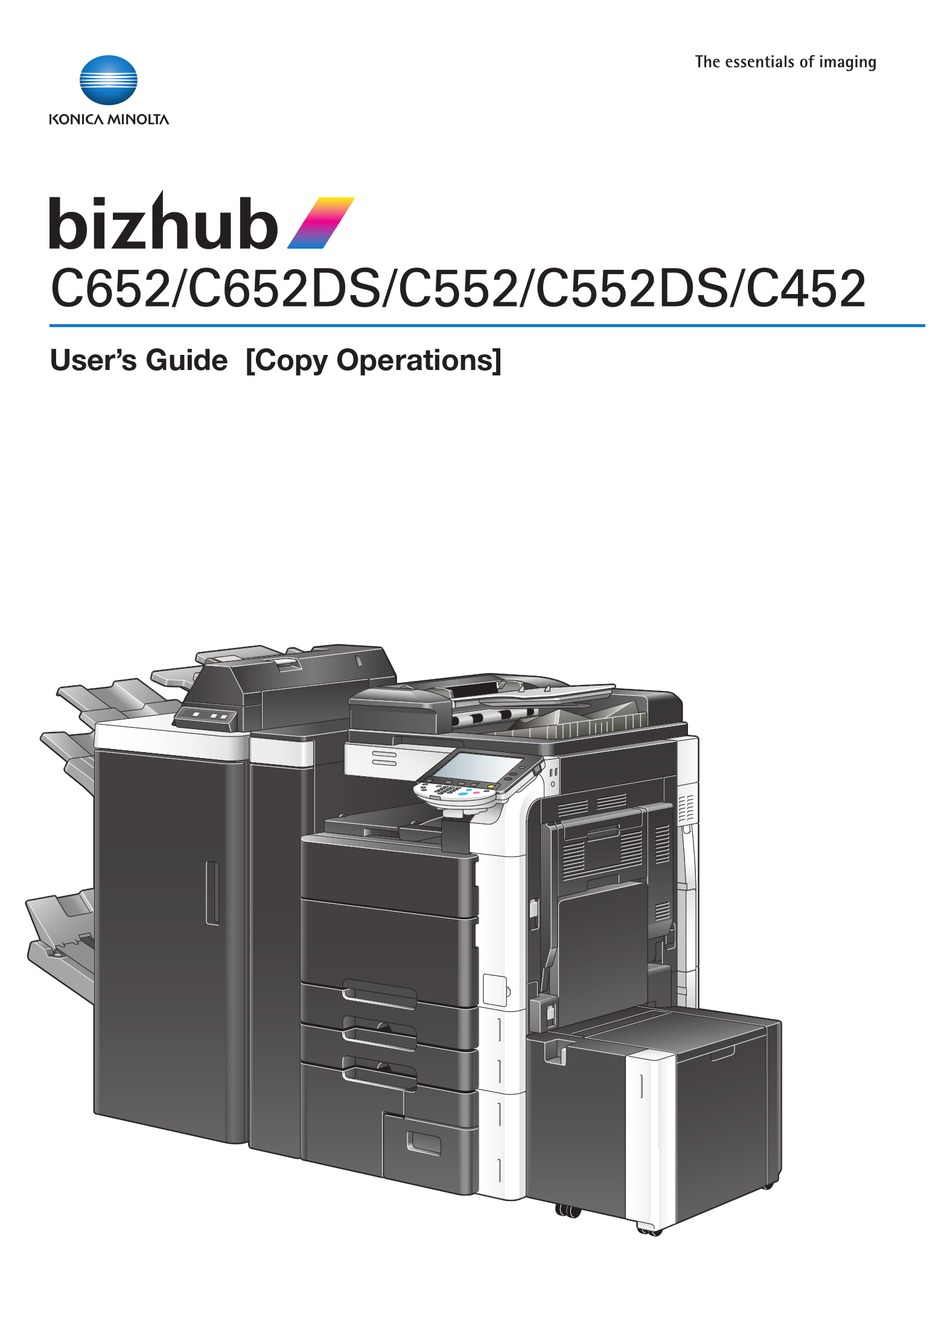 Konica Minolta Bizhub C452 Copy Manual Pdf Download Manualslib